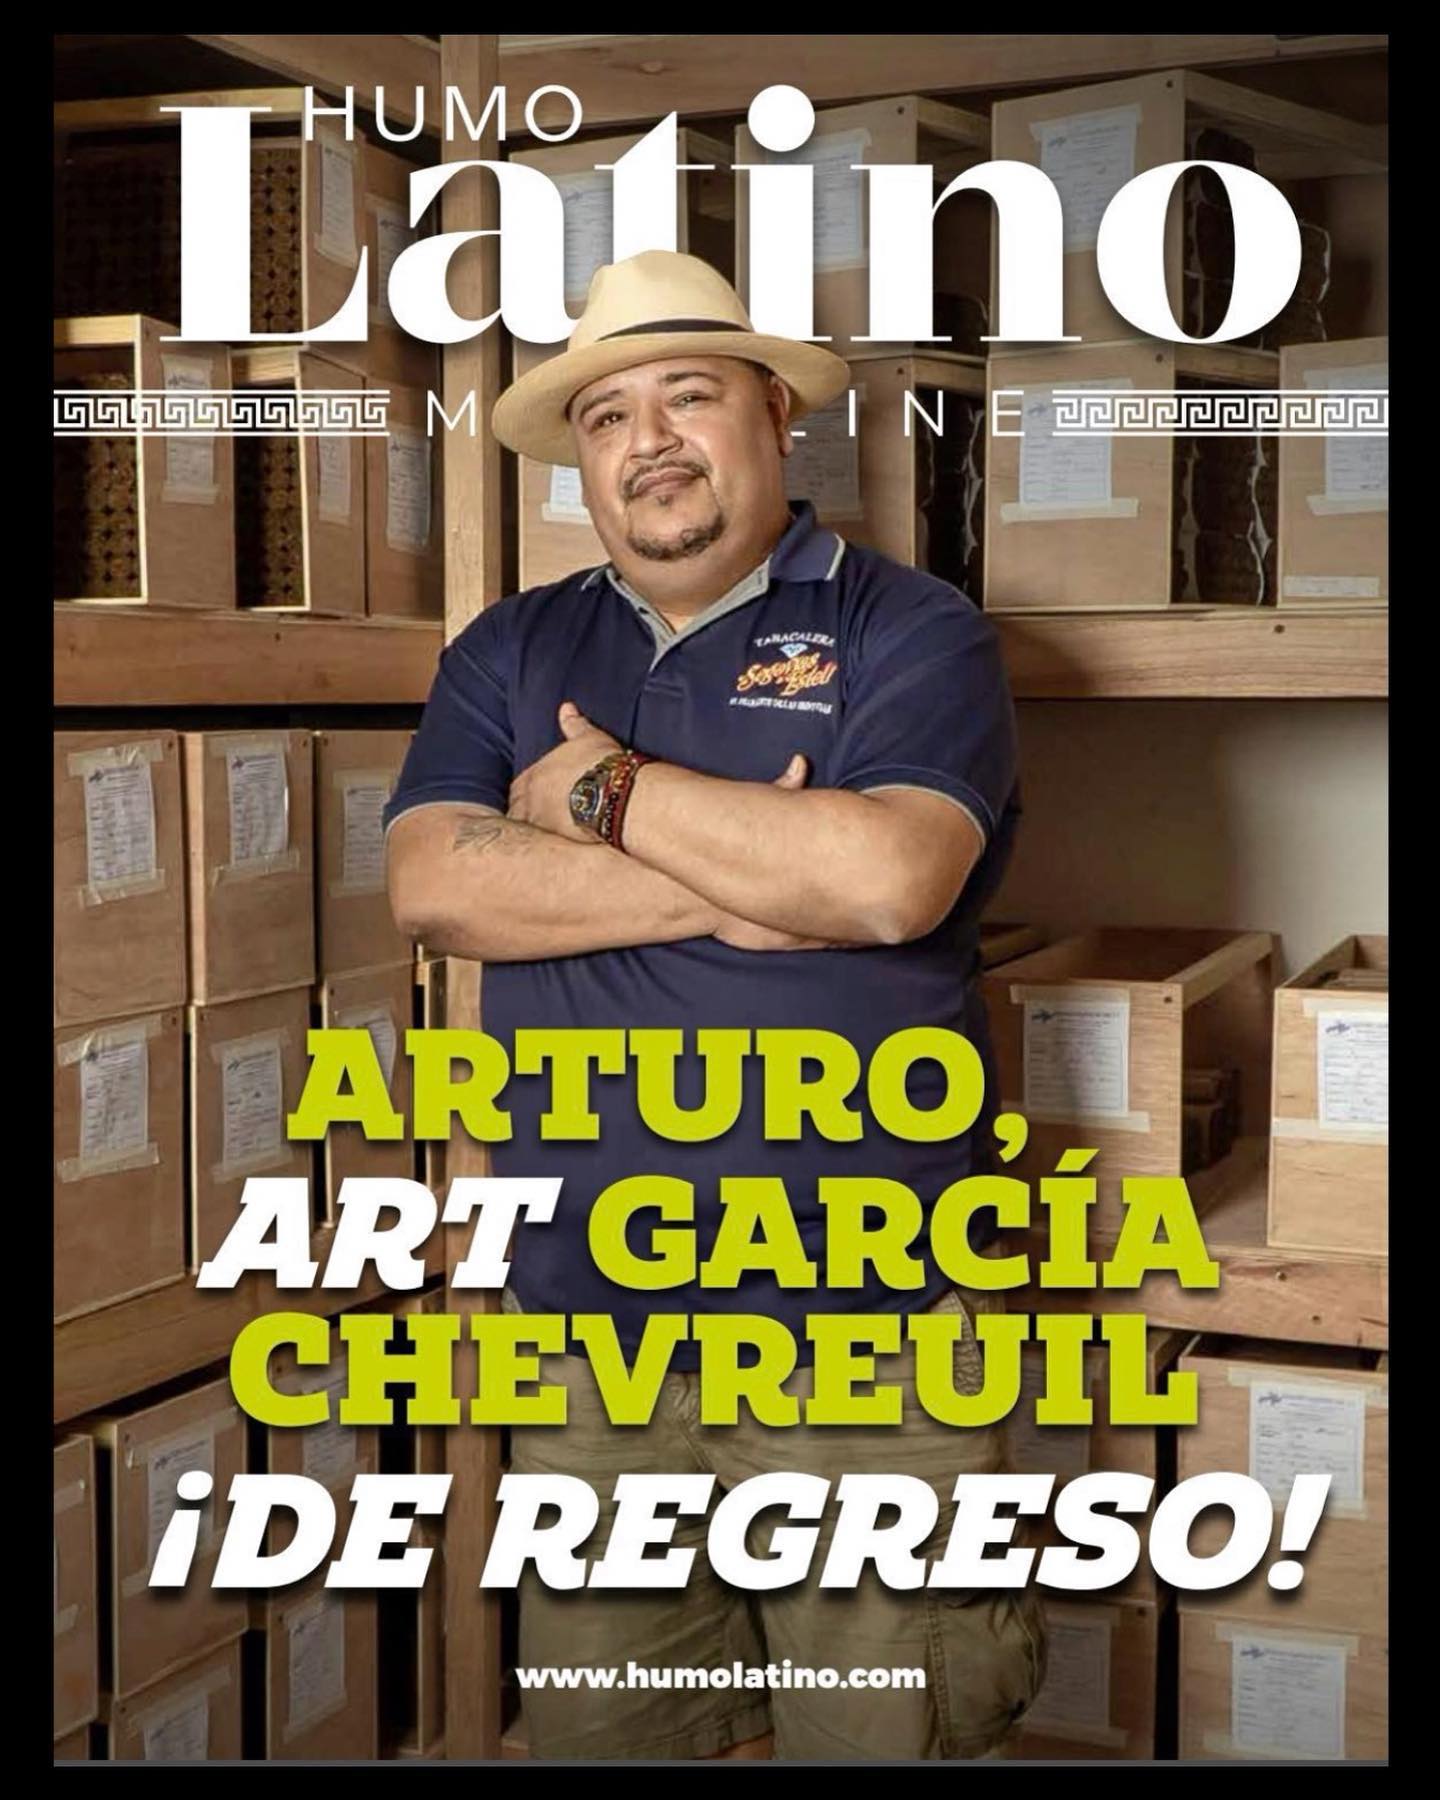 Saiu a nova edição da revista Humo Latino Magazine com “Art” García Chevreuil na capa